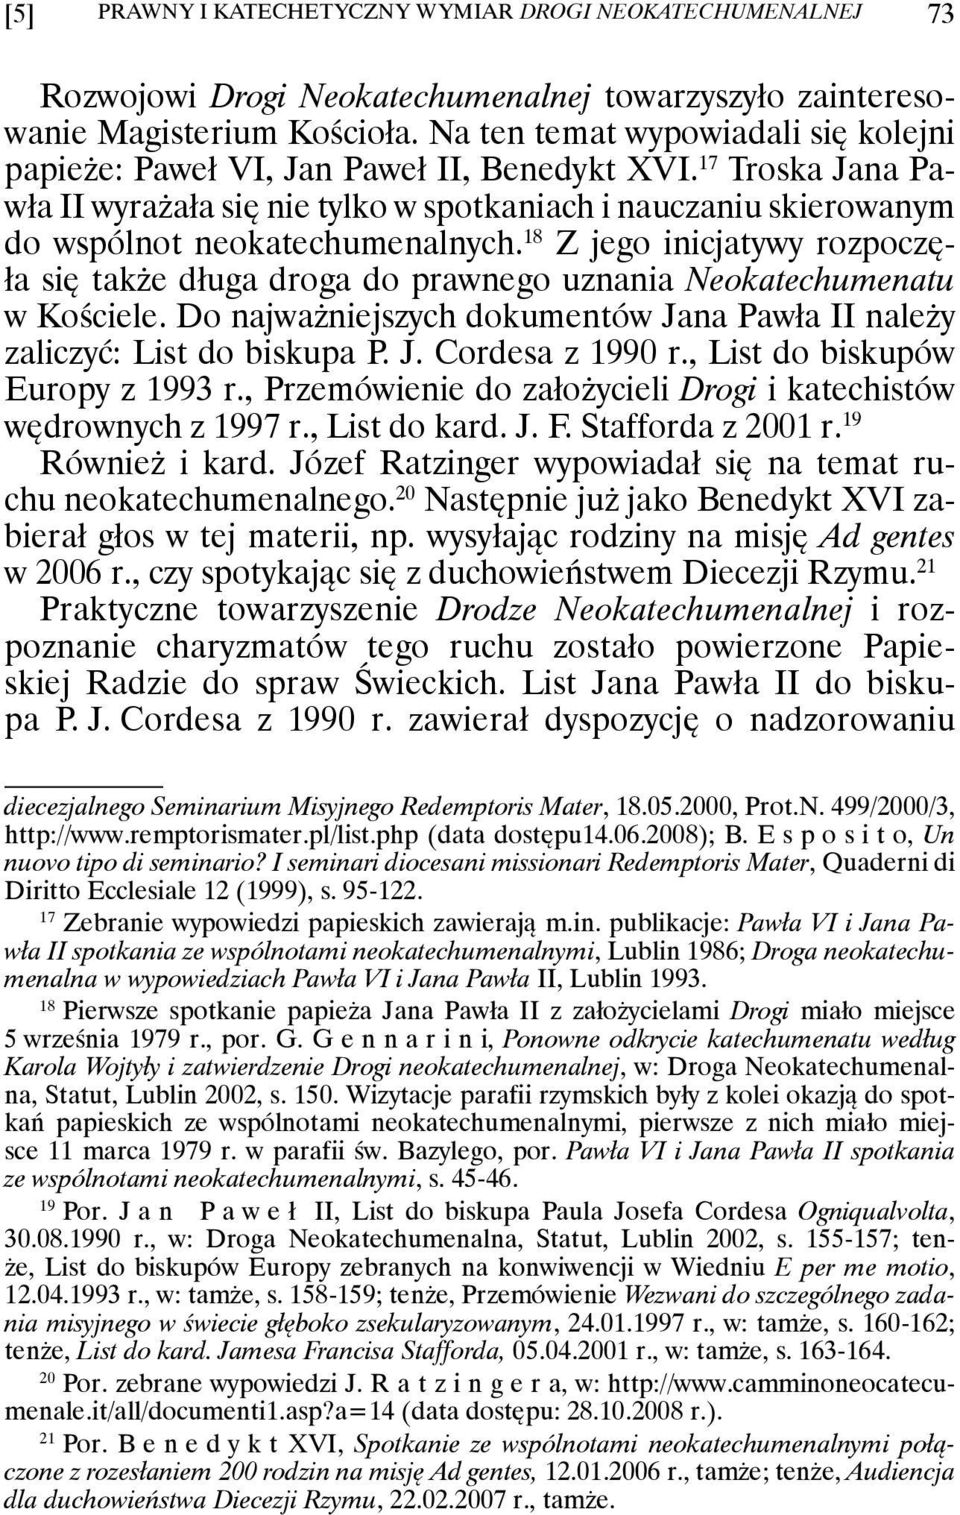 17 Troska Jana Pawła II wyrażała się nie tylko w spotkaniach i nauczaniu skierowanym do wspólnot neokatechumenalnych.